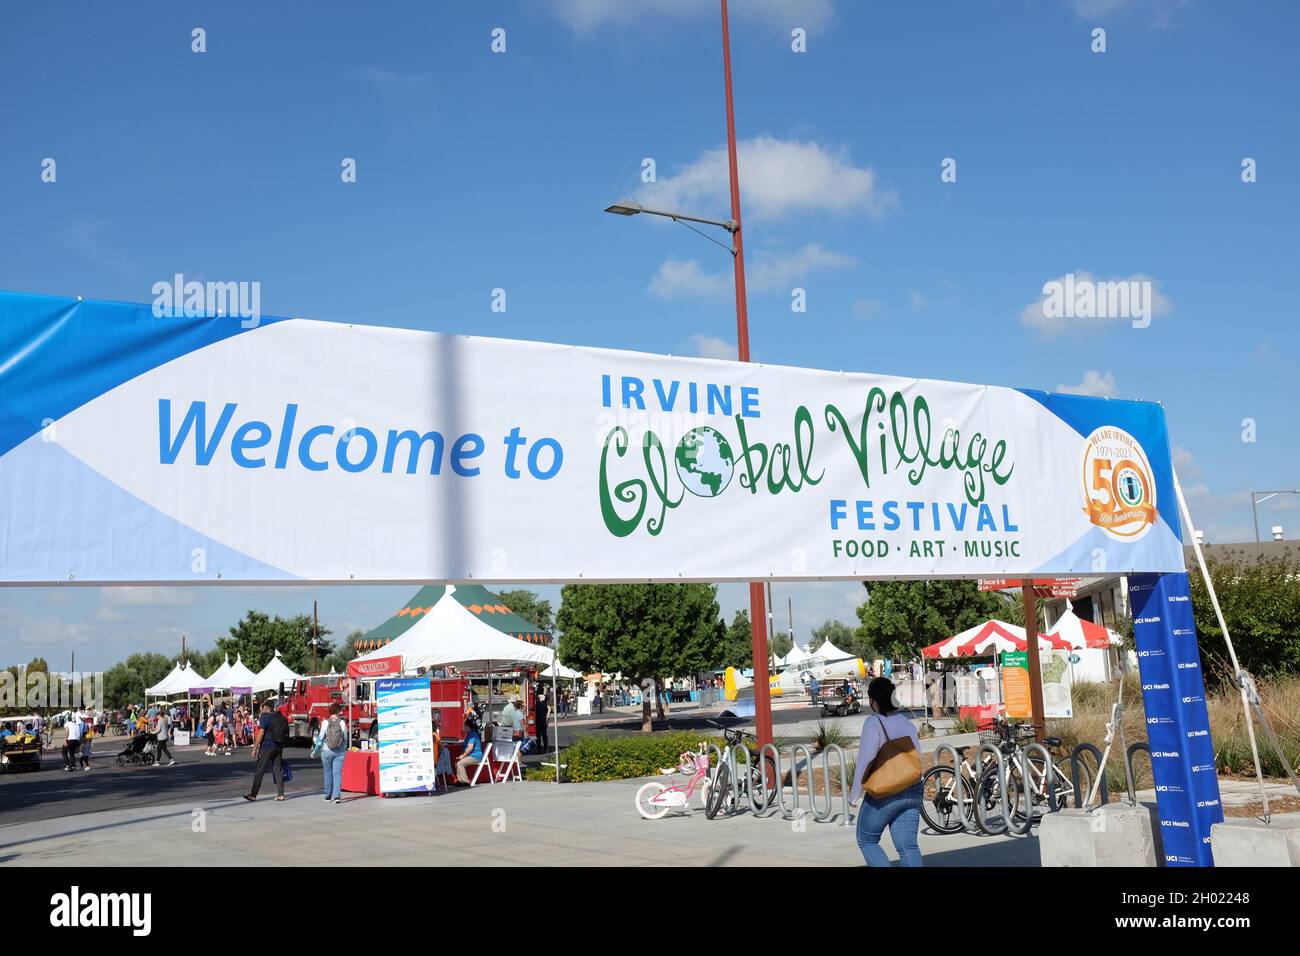 IRVINE, CALIFORNIA - 9 ottobre 2021: Striscione sull'ingresso all'Irvine Global Village Festival, un evento annuale che si tiene presso il Great Park. Foto Stock